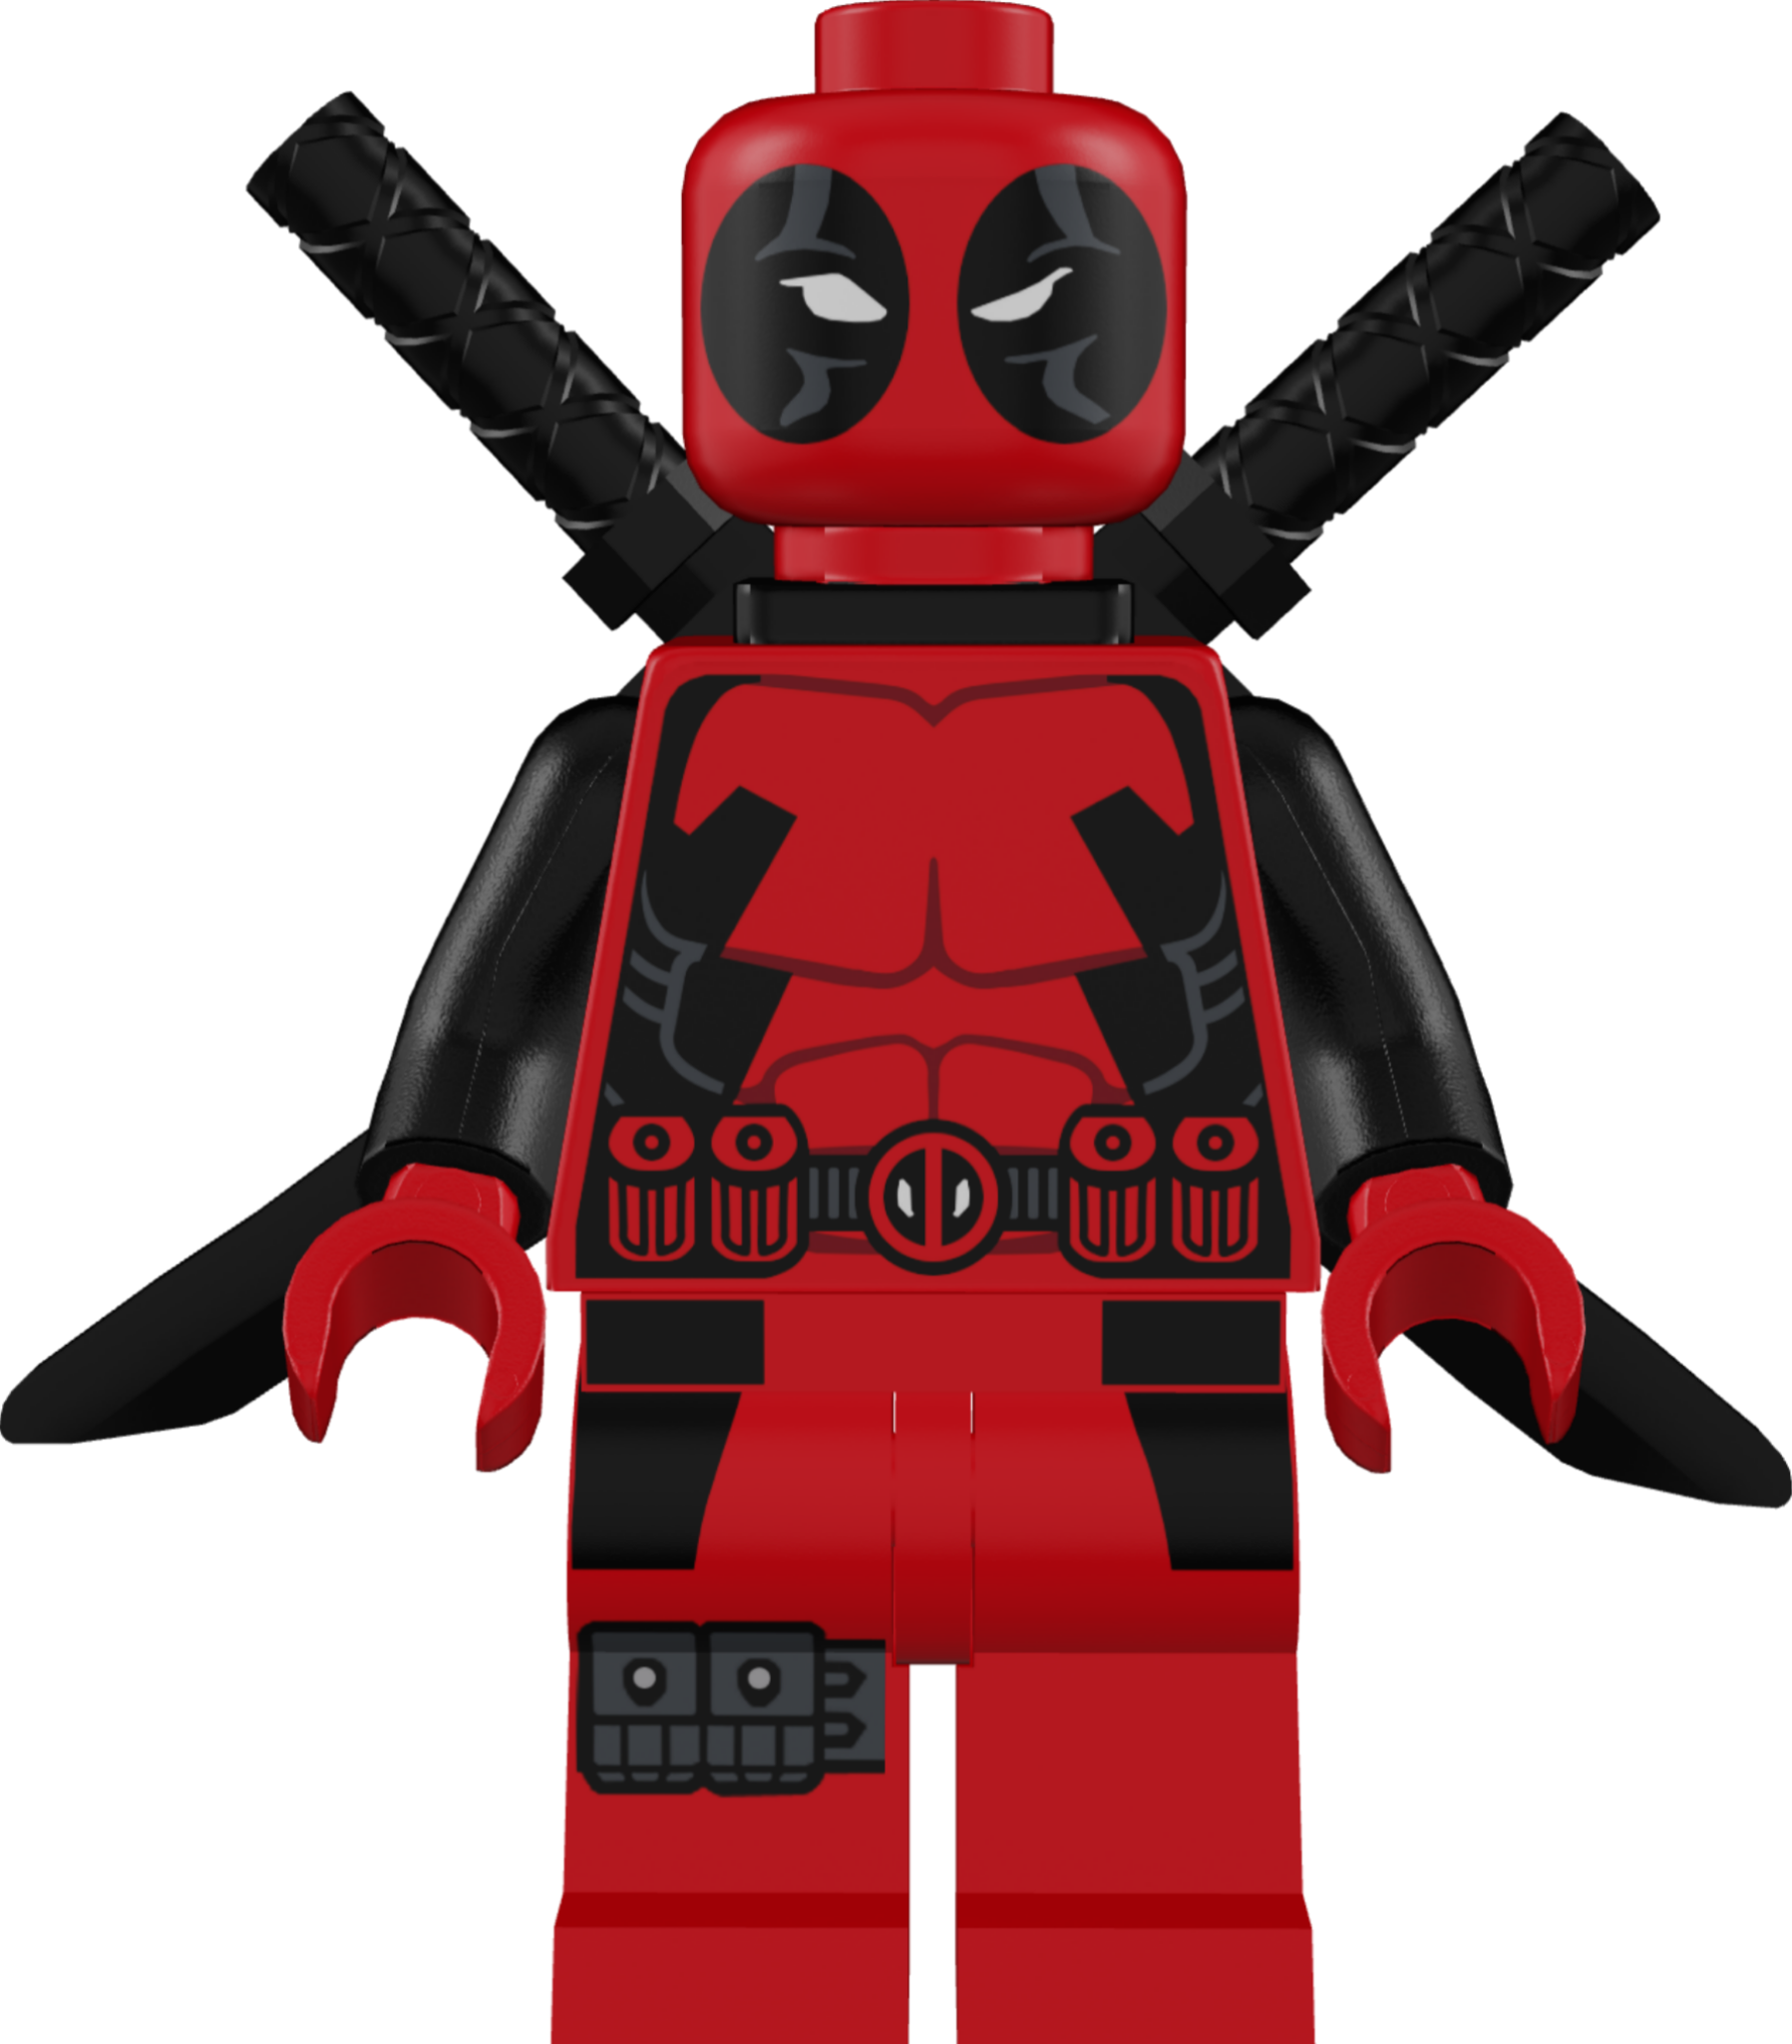 The Anti-Hero Figurine - Deadpool Tiny Figurine Set of 3